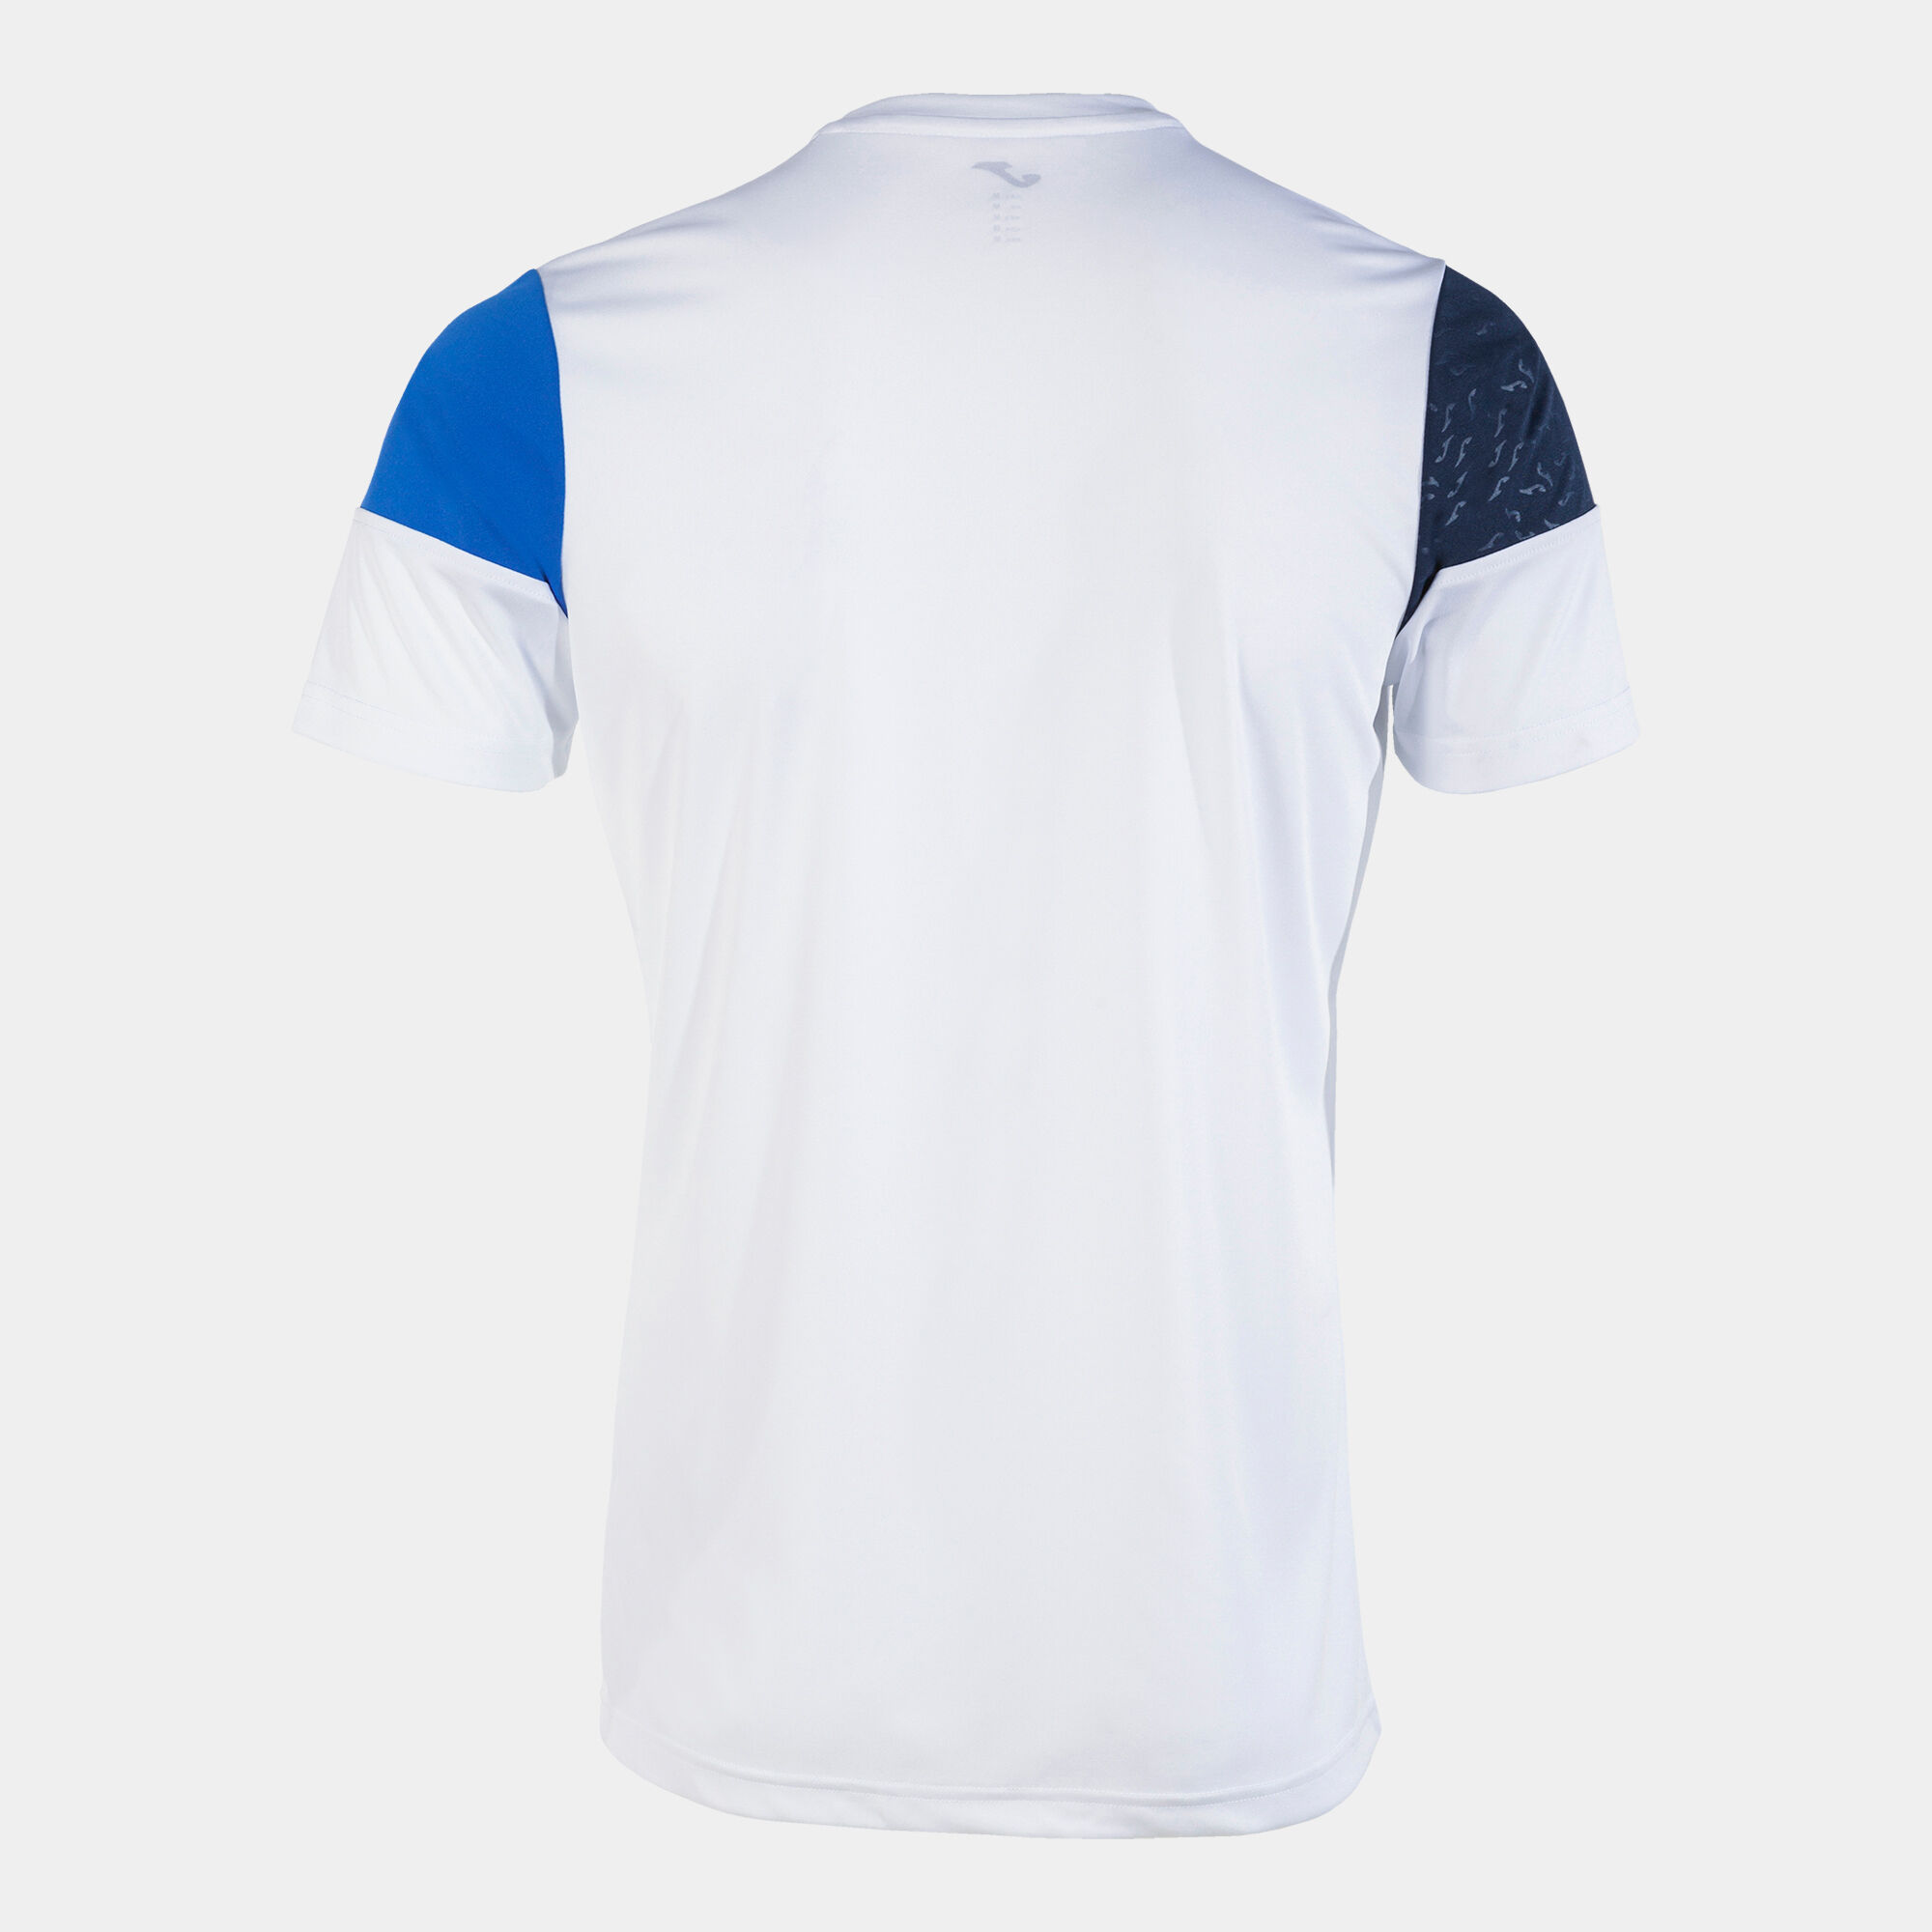 Koszulka z krótkim rękawem mężczyźni Crew V bialy niebieski royal